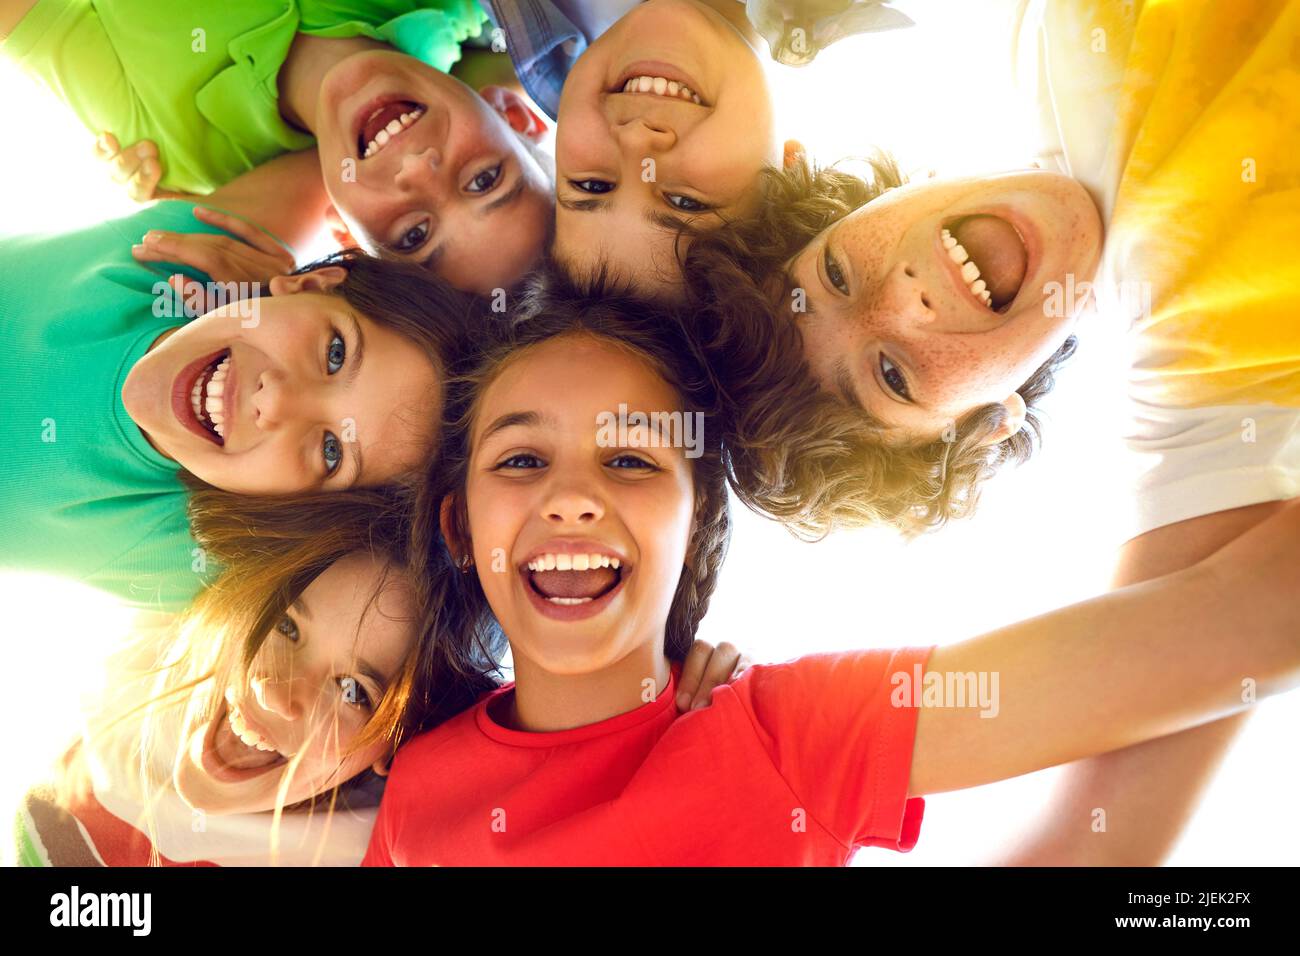 Eine Gruppe von glücklichen kleinen Kindern, die zusammen spielen, Spaß haben, sich duscheln, nach unten schauen und lächeln Stockfoto